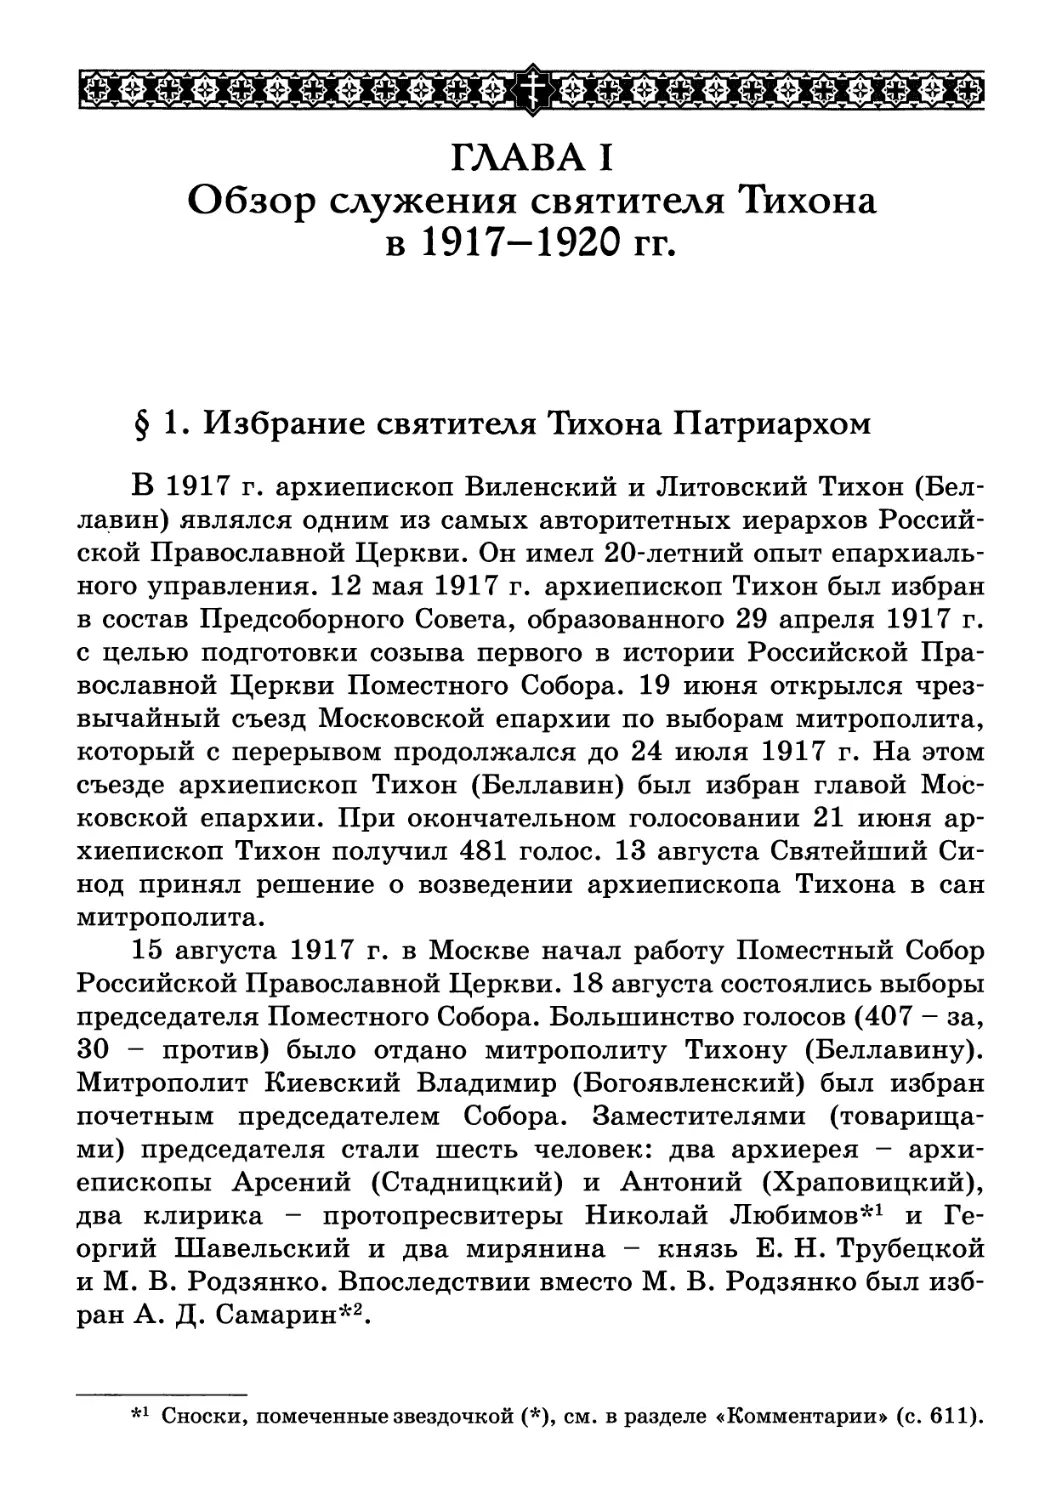 ГЛАВА I. Обзор служения святителя Тихона в 1917-1920 гг.